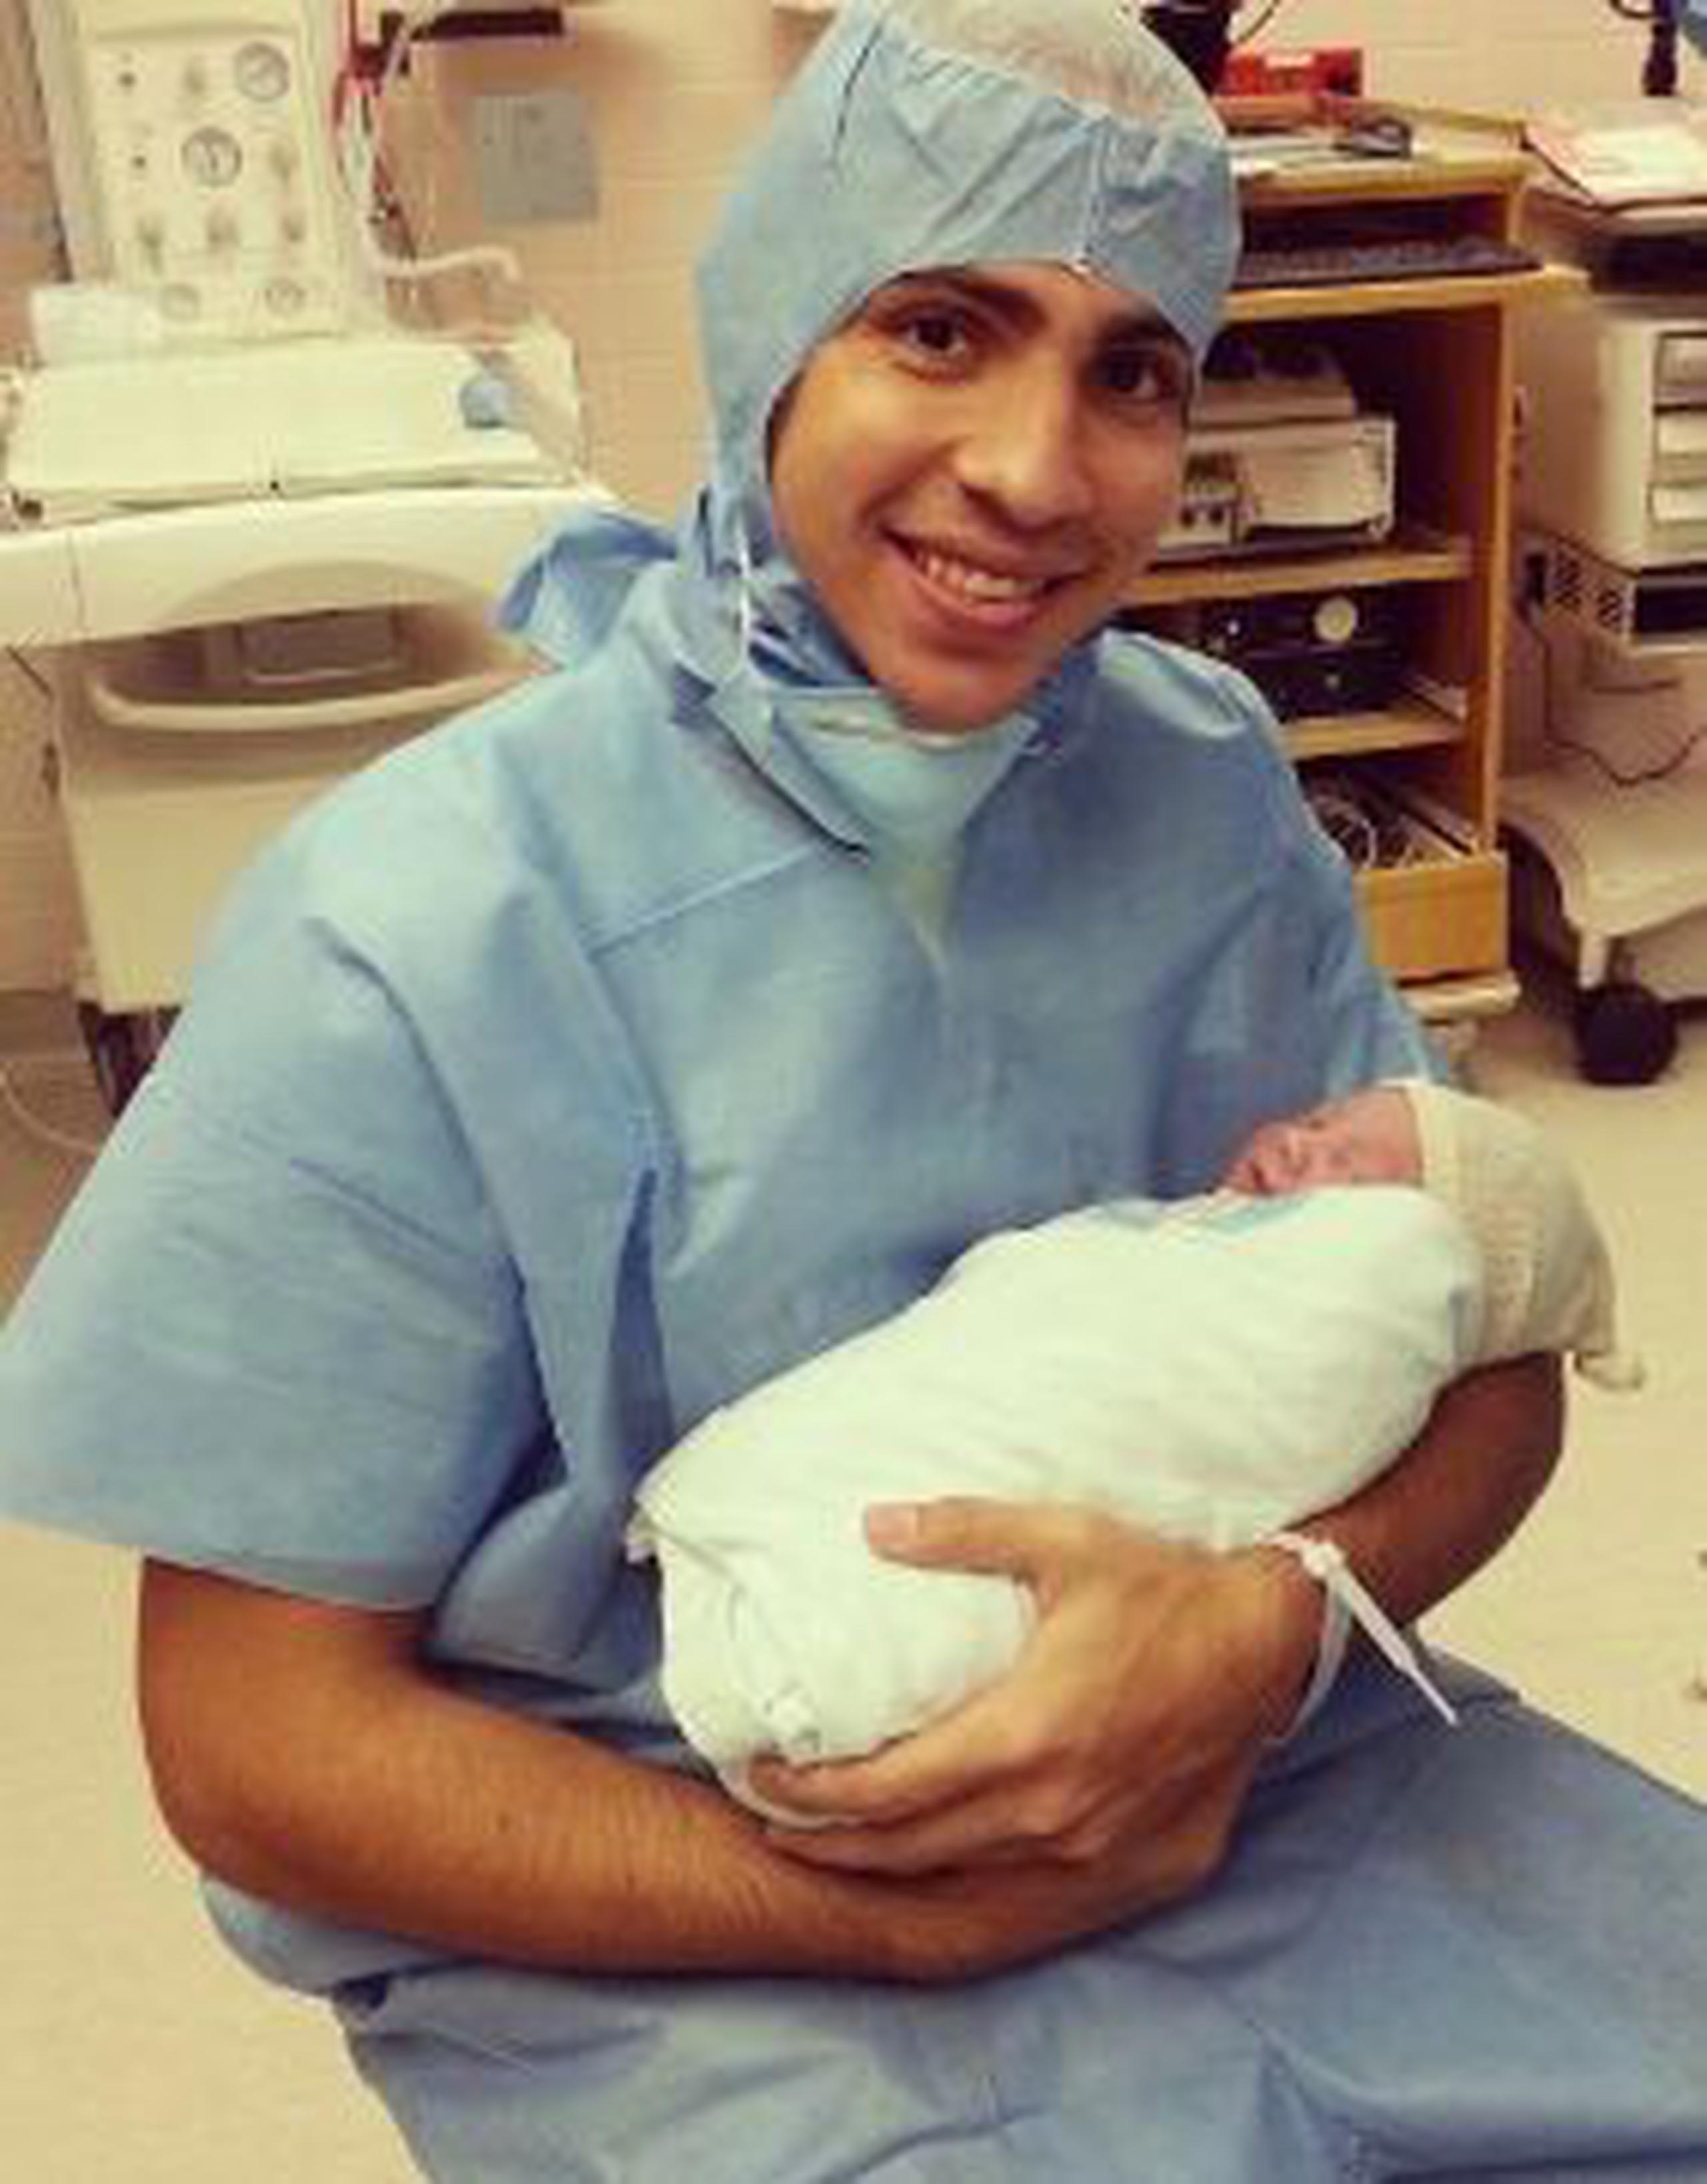 ORGULLOSO PADRE  Carlos Arroyo sostiene en sus brazos a su hijo, Carlos Adrián, momentos después de su nacimiento.     &nbsp;<font color="yellow">(Suministrada)</font>